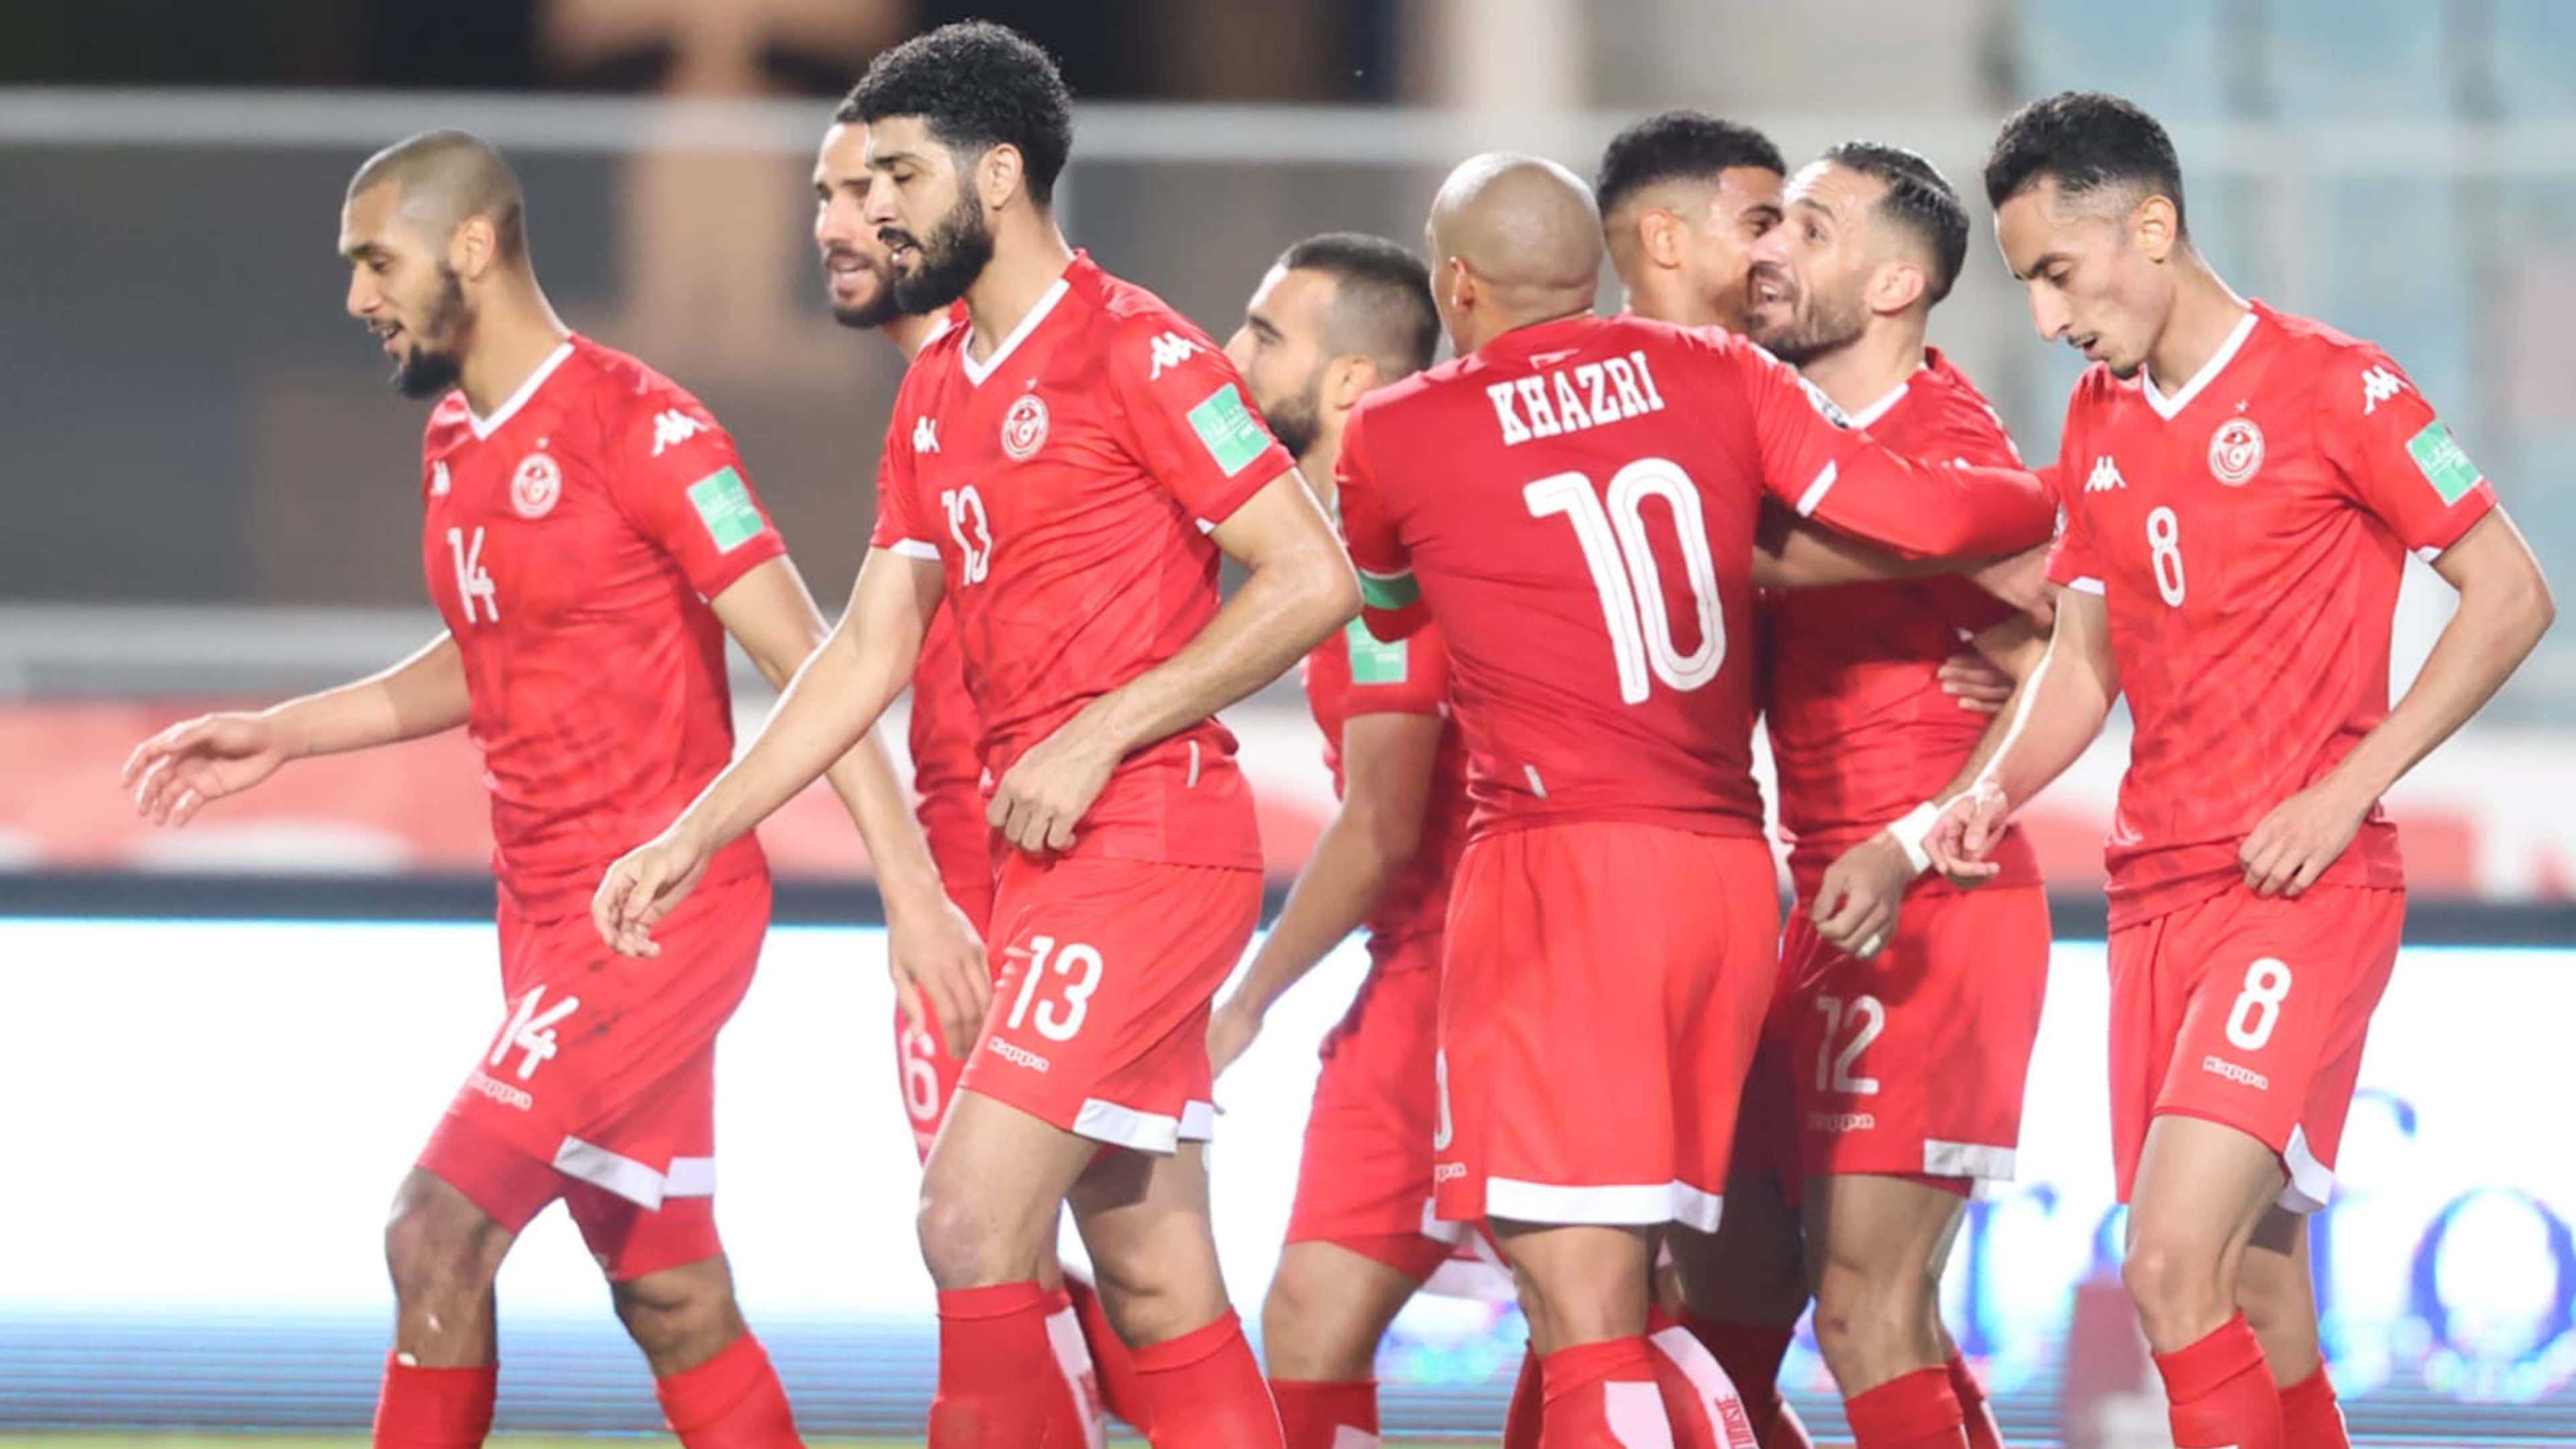 Le championnat tunisien de football en direct dès aujourd'hui